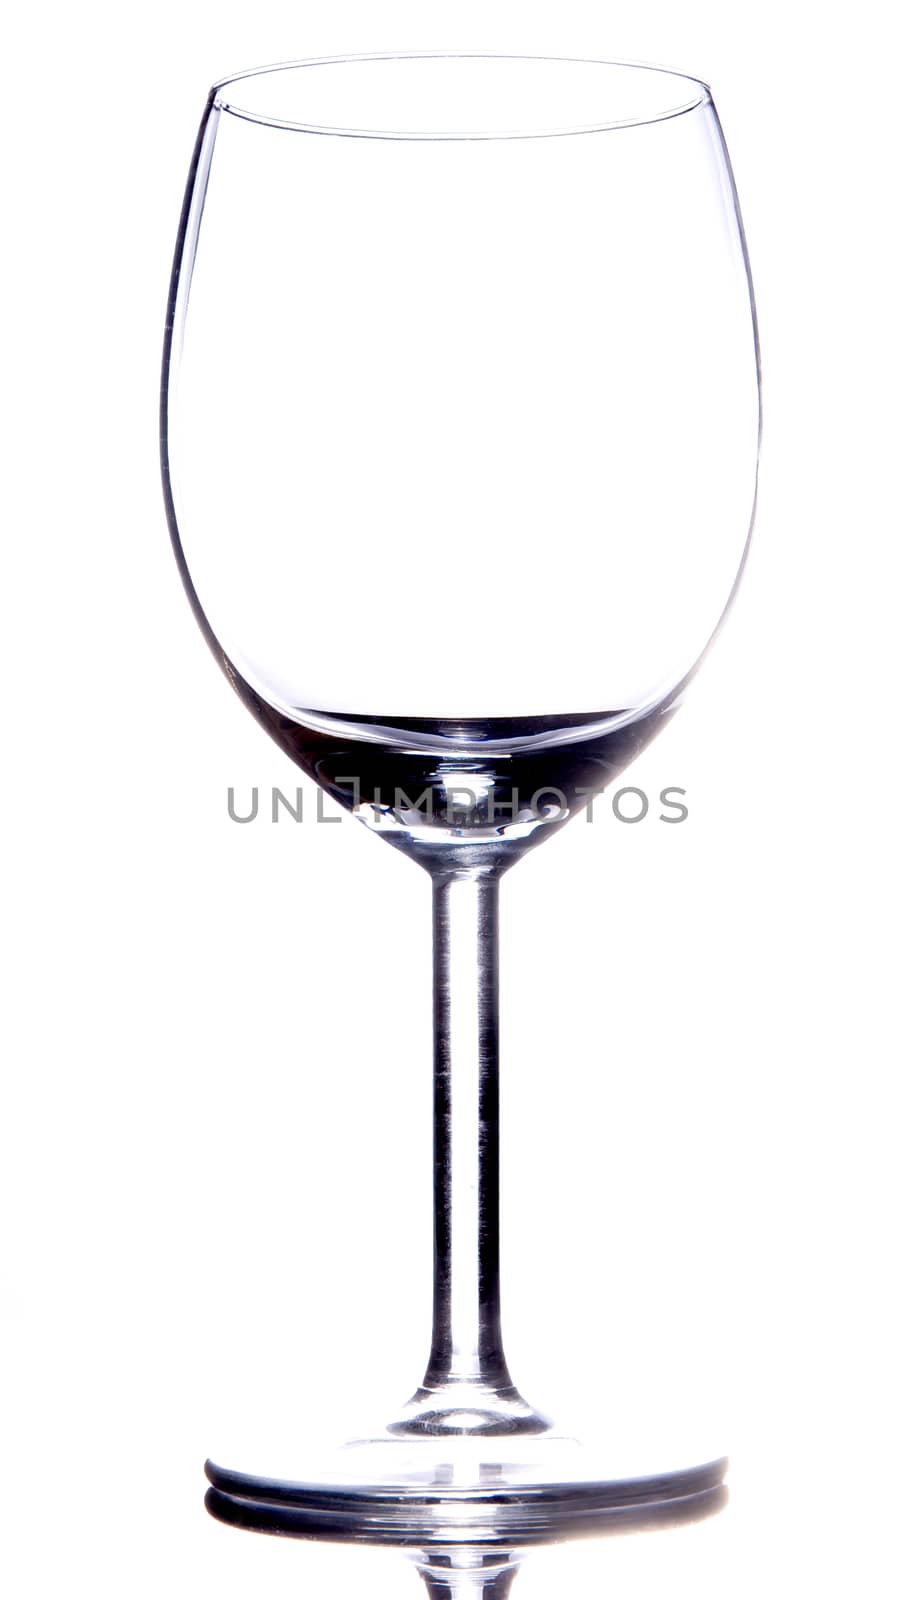 Empty vine glass on white